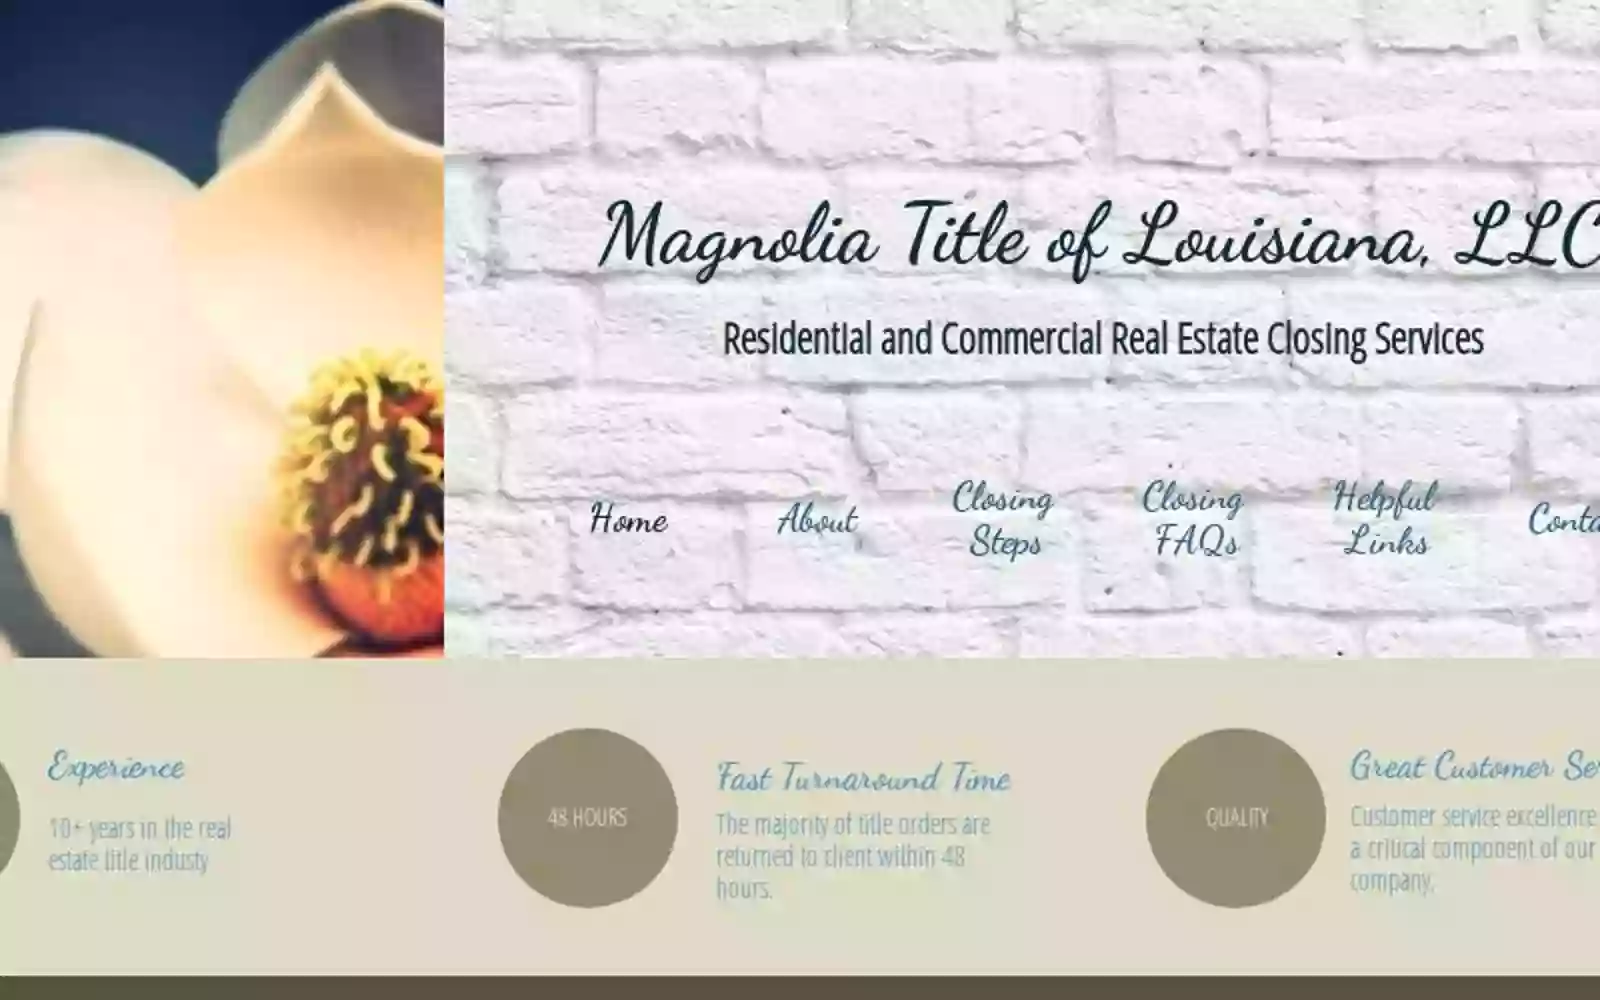 Magnolia Title of Louisiana, LLC